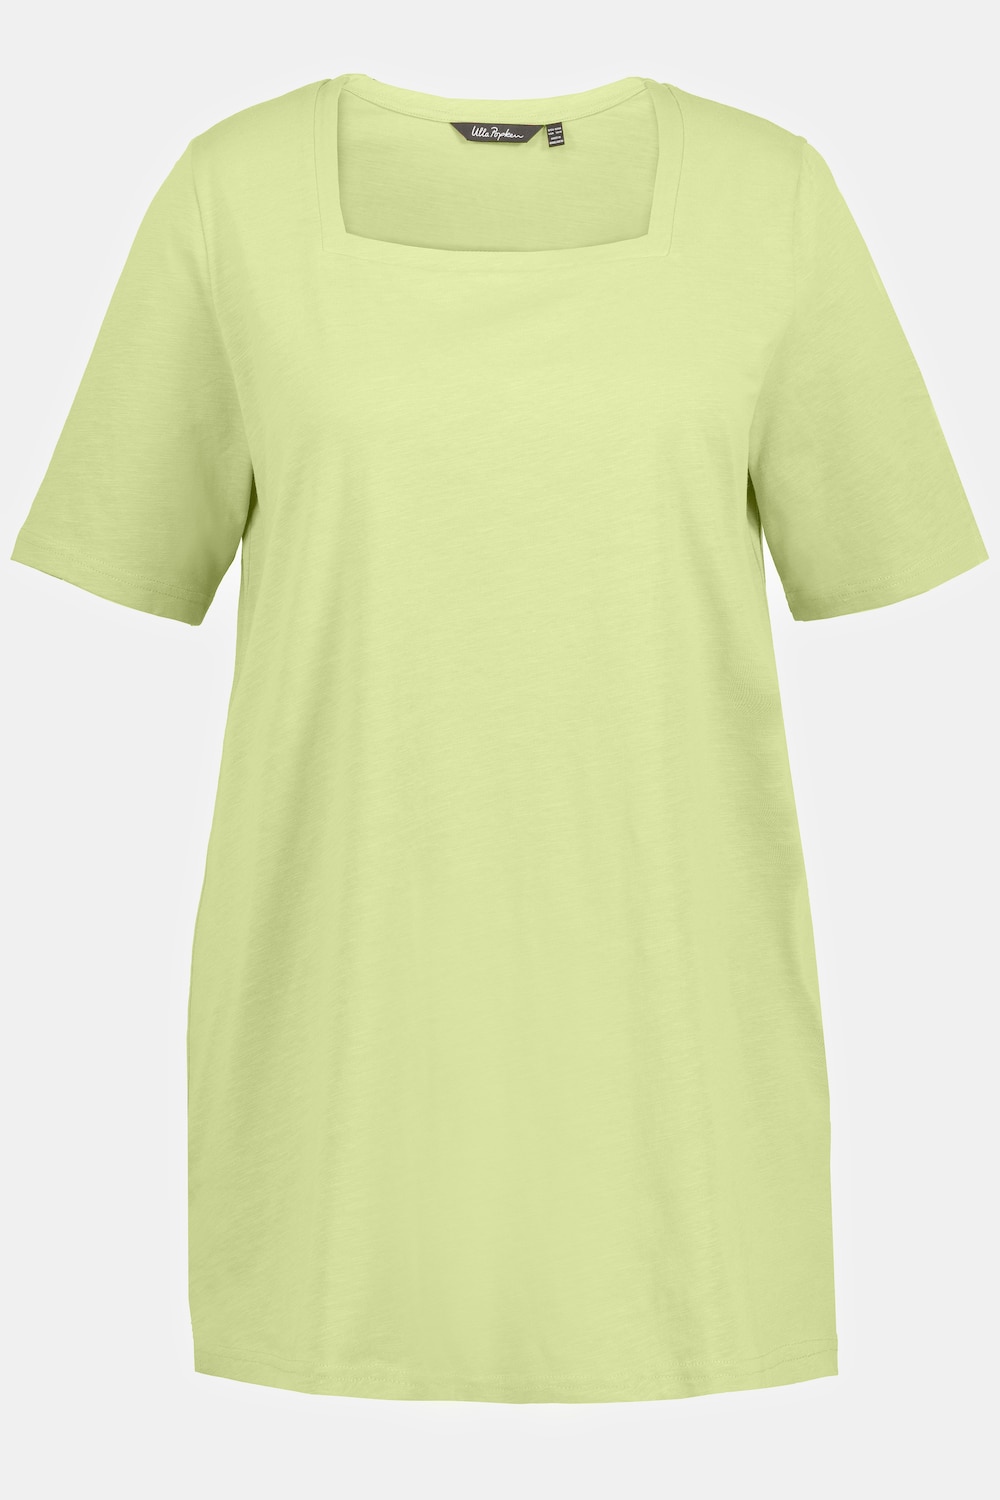 Große Größen Longshirt, Damen, grün, Größe: 46/48, Baumwolle, Ulla Popken